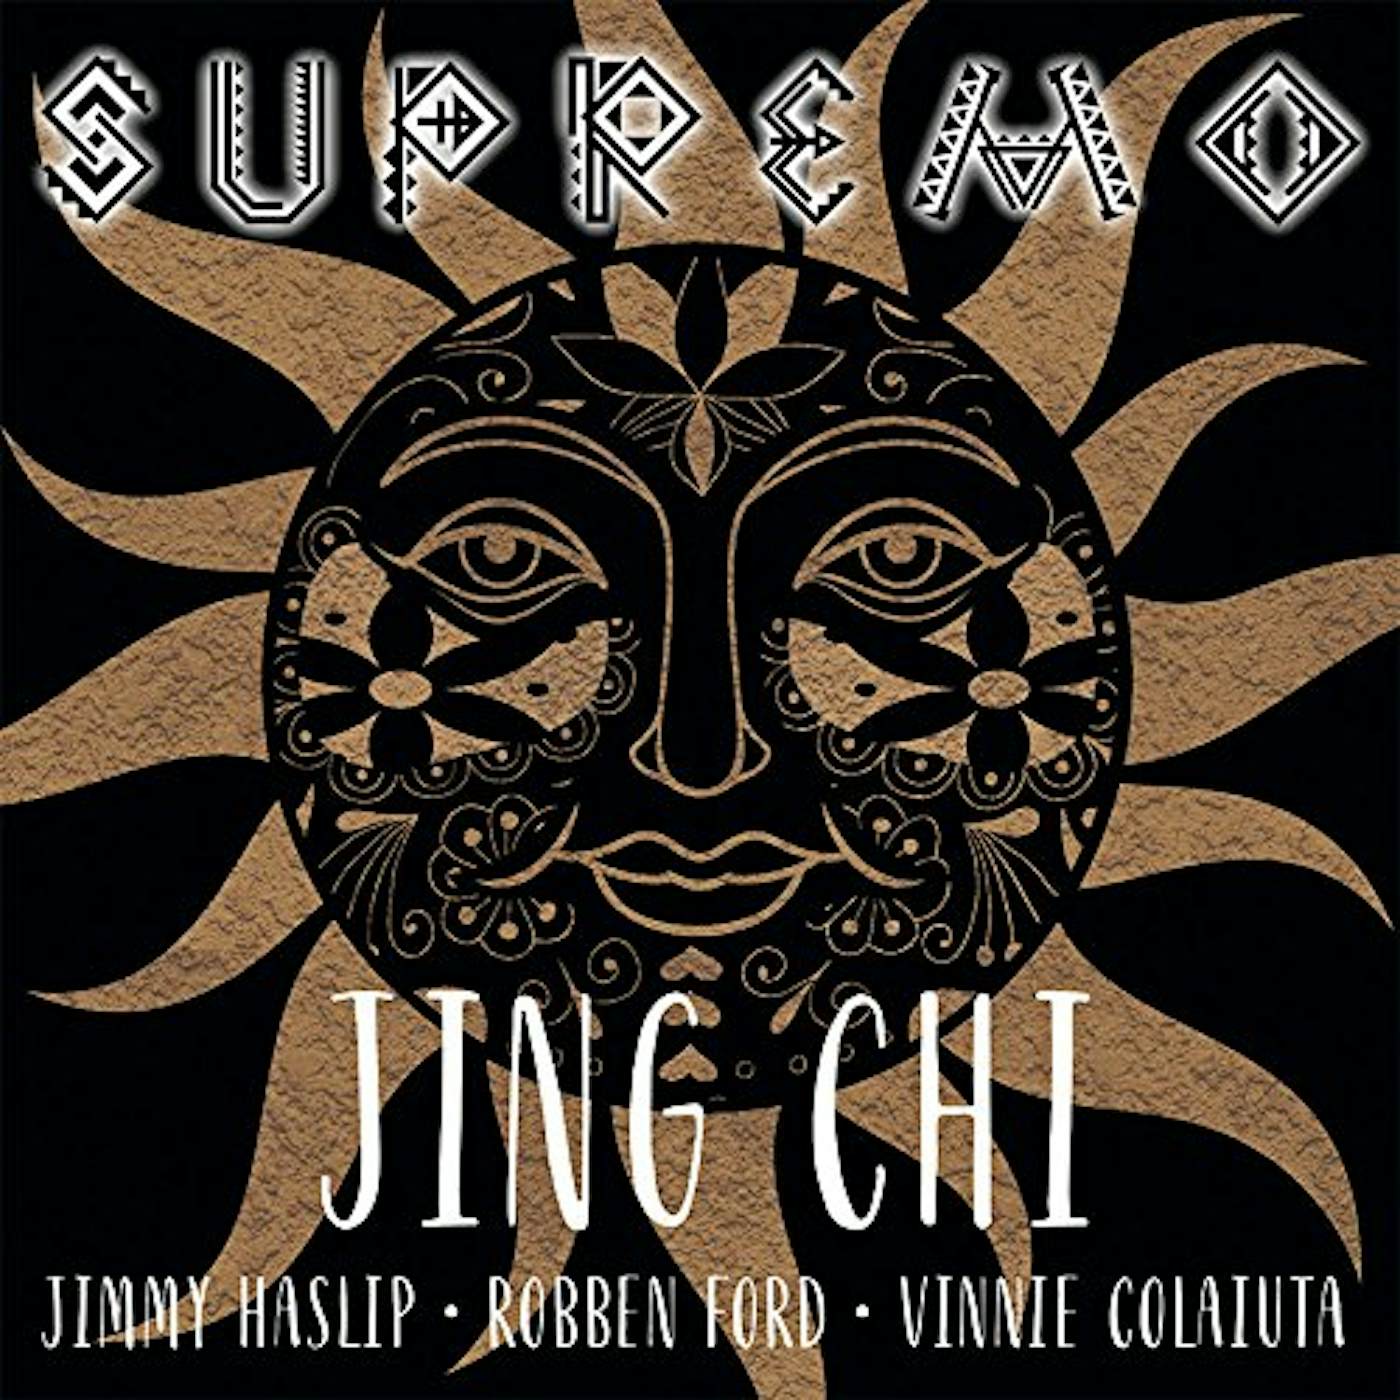 Jing Chi SUPREMO CD